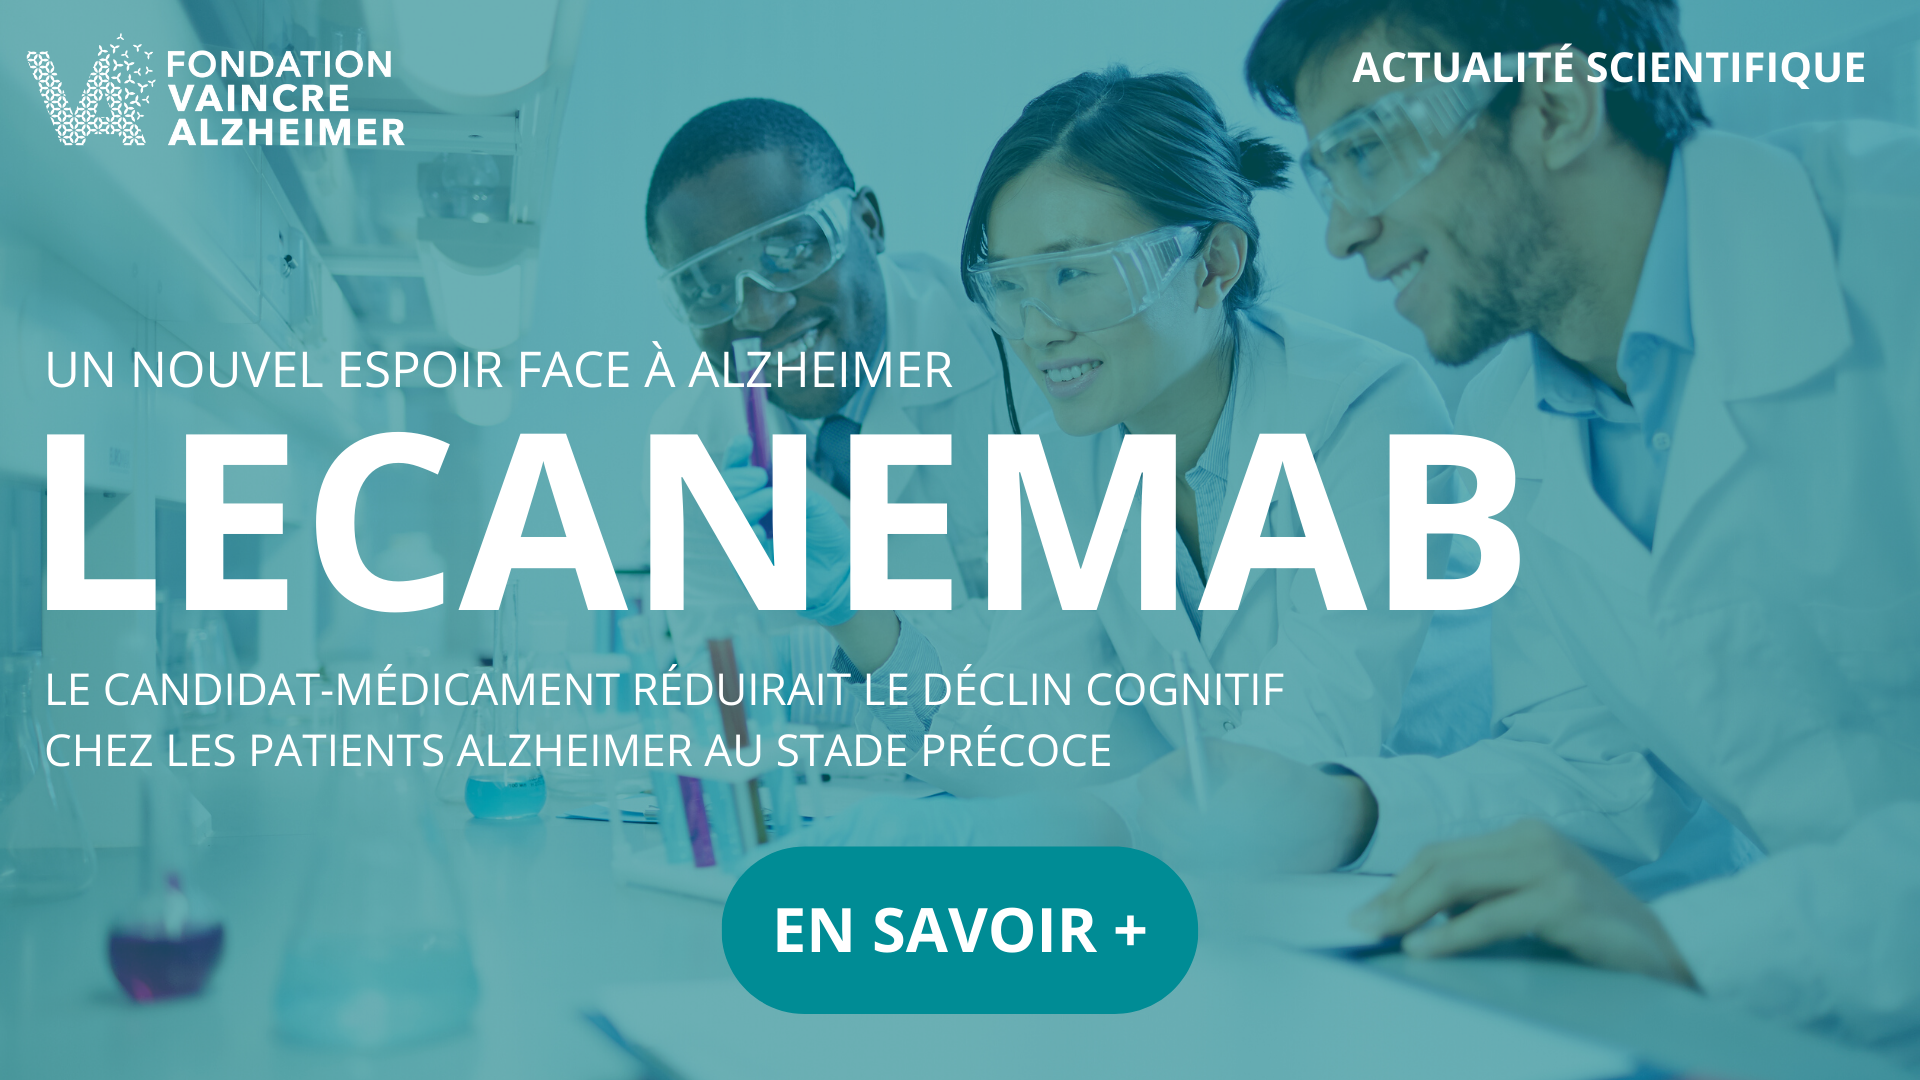 Lecanemab : le candidat-médicament contre Alzheimer d'Esai et Biogen